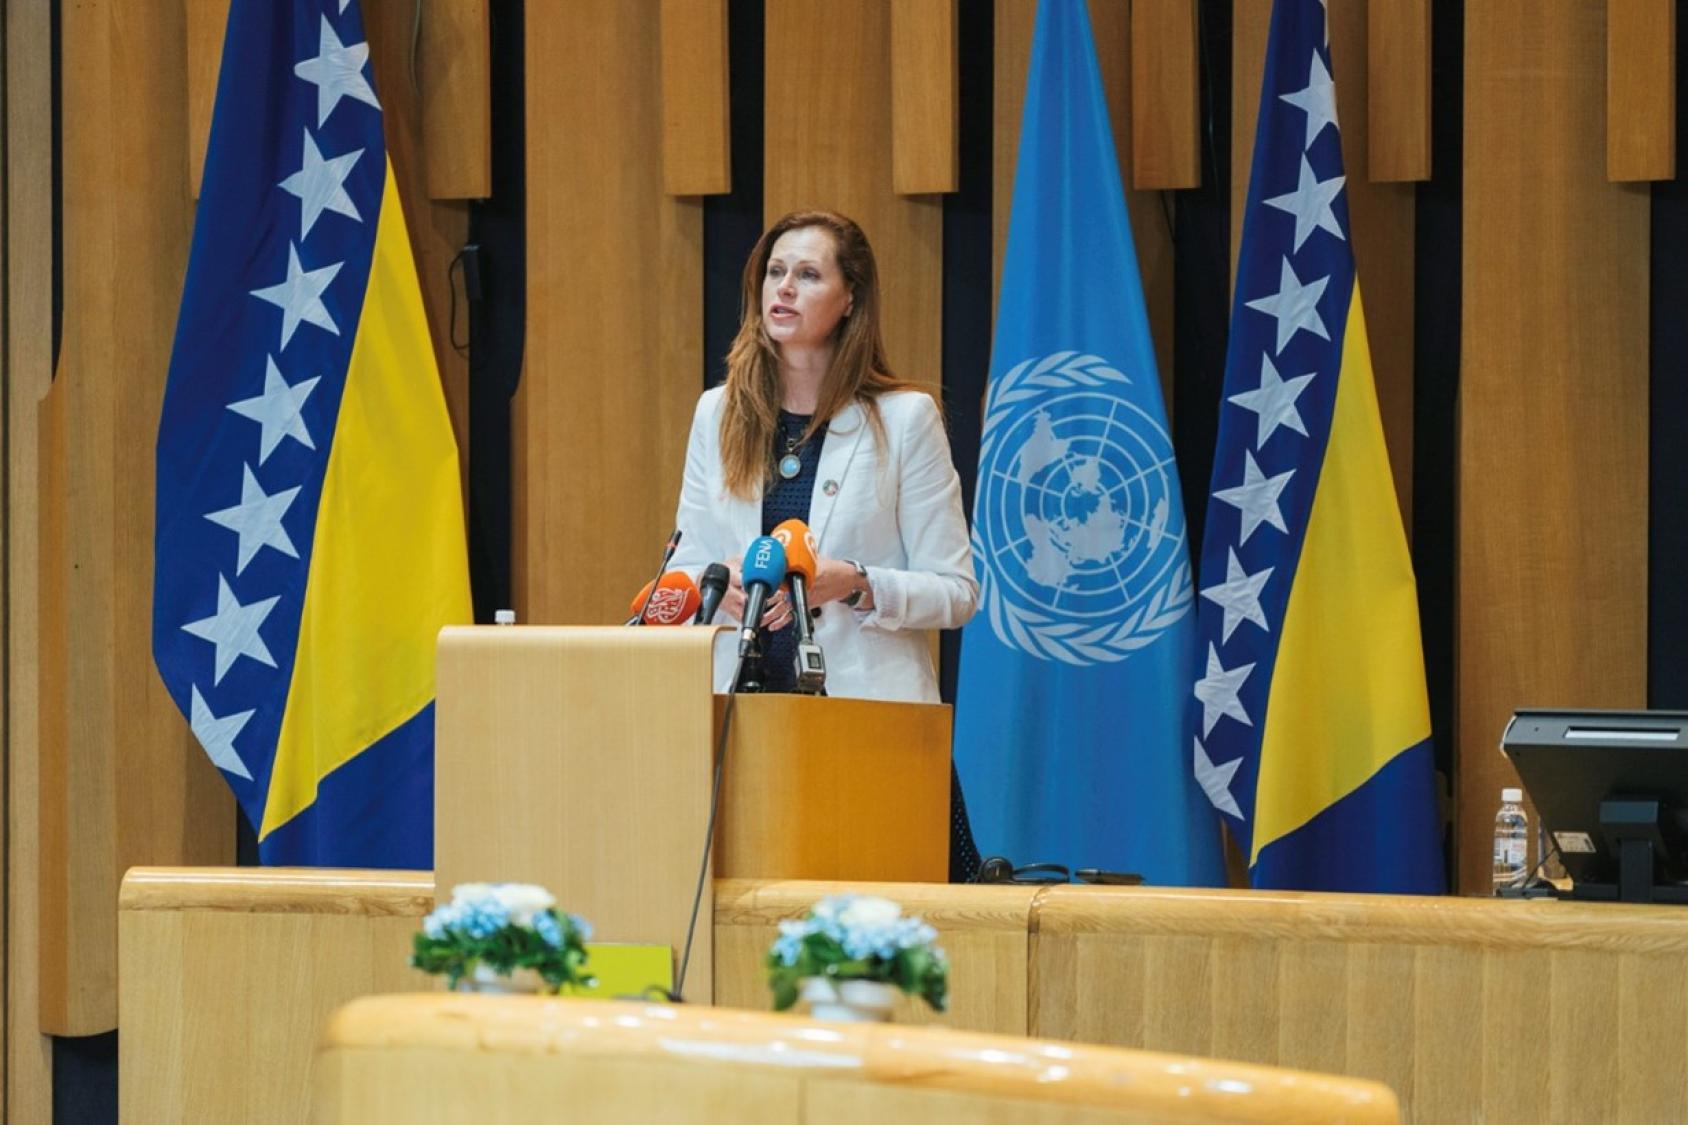 La Coordinadora Residente de la ONU en Bosnia y Herzegovina, Ingrid Macdonald, sube al podio de la Asamblea Parlamentaria para pronunciar un discurso sobre la contribución de Bosnia y Herzegovina a las Naciones Unidas en los últimos 30 años.